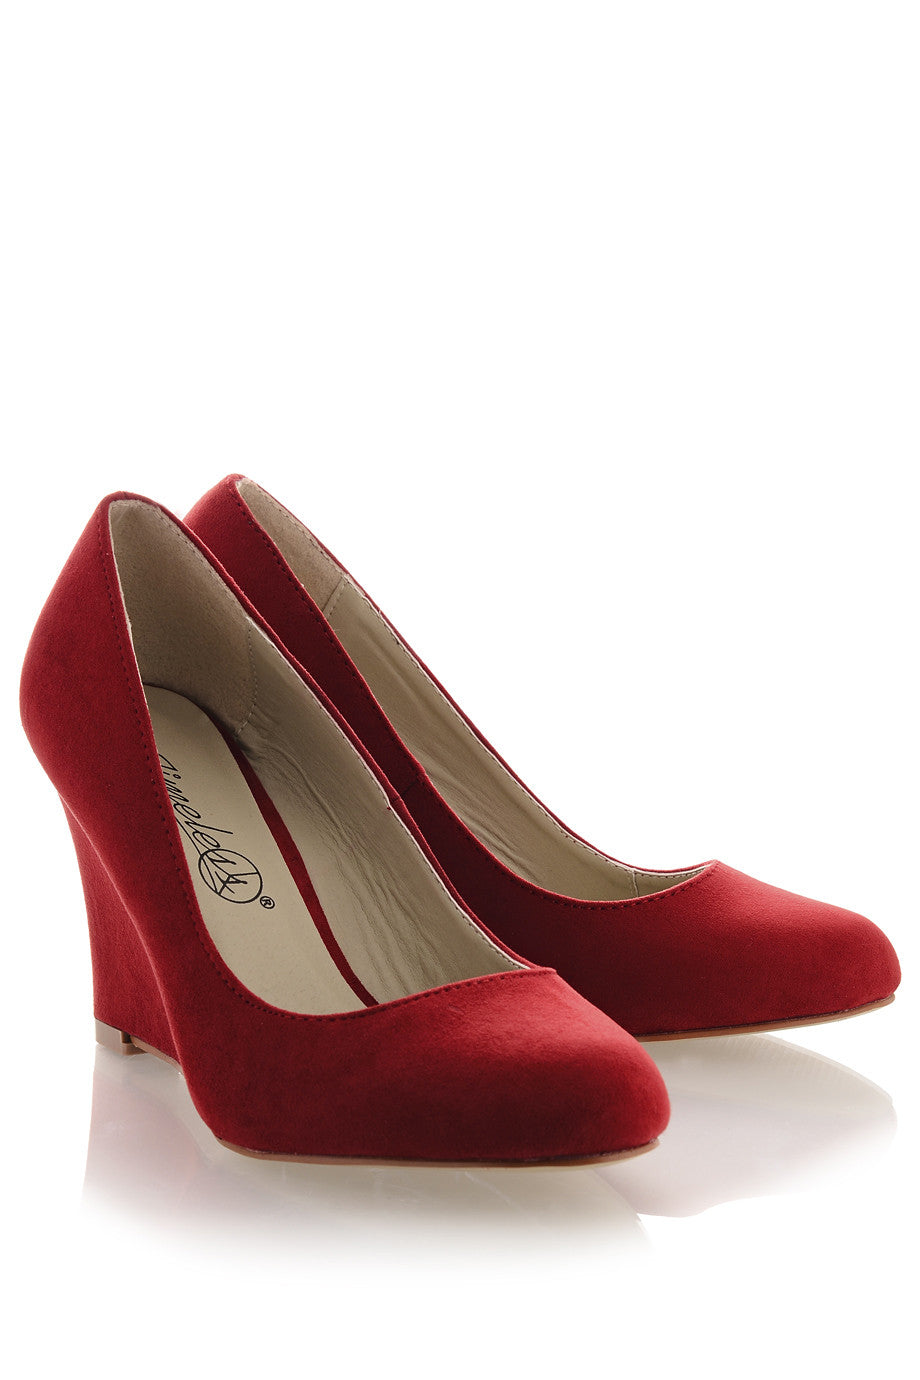 Κόκκινες Καστόρινες Πλατφόρμες | Γυναικεία Παπούτσια